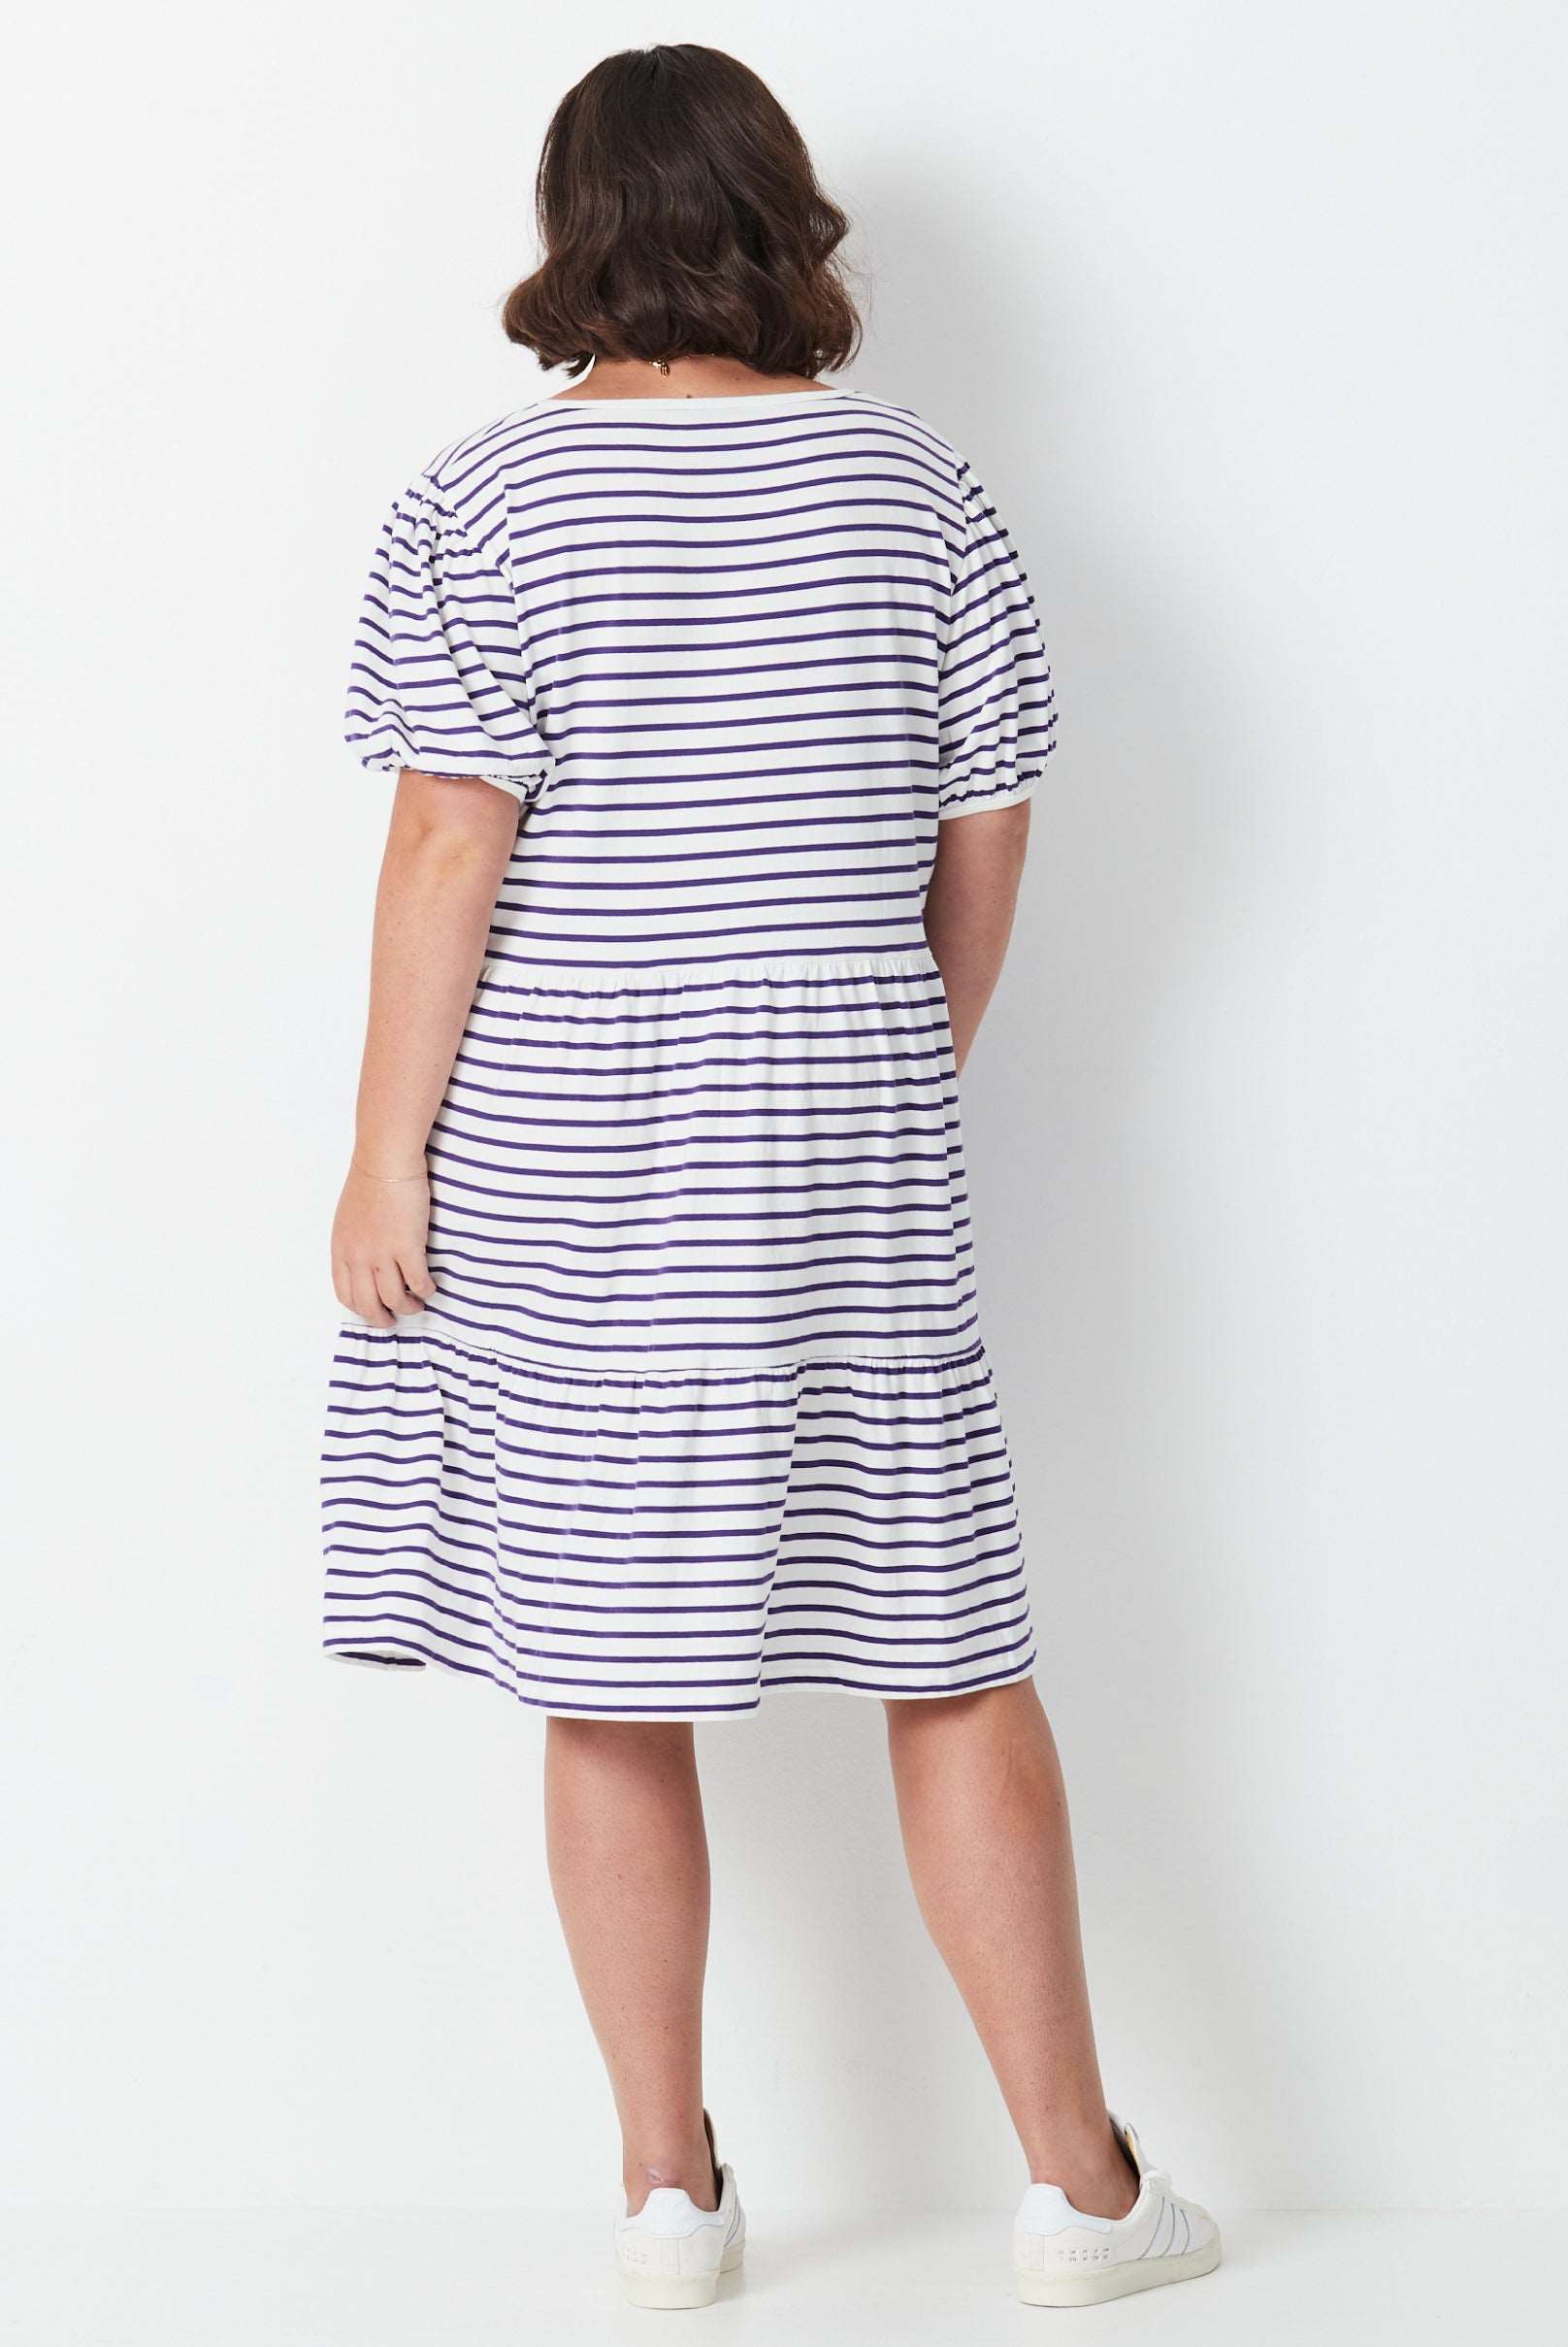 Grape Stripe Dress - Grape/White